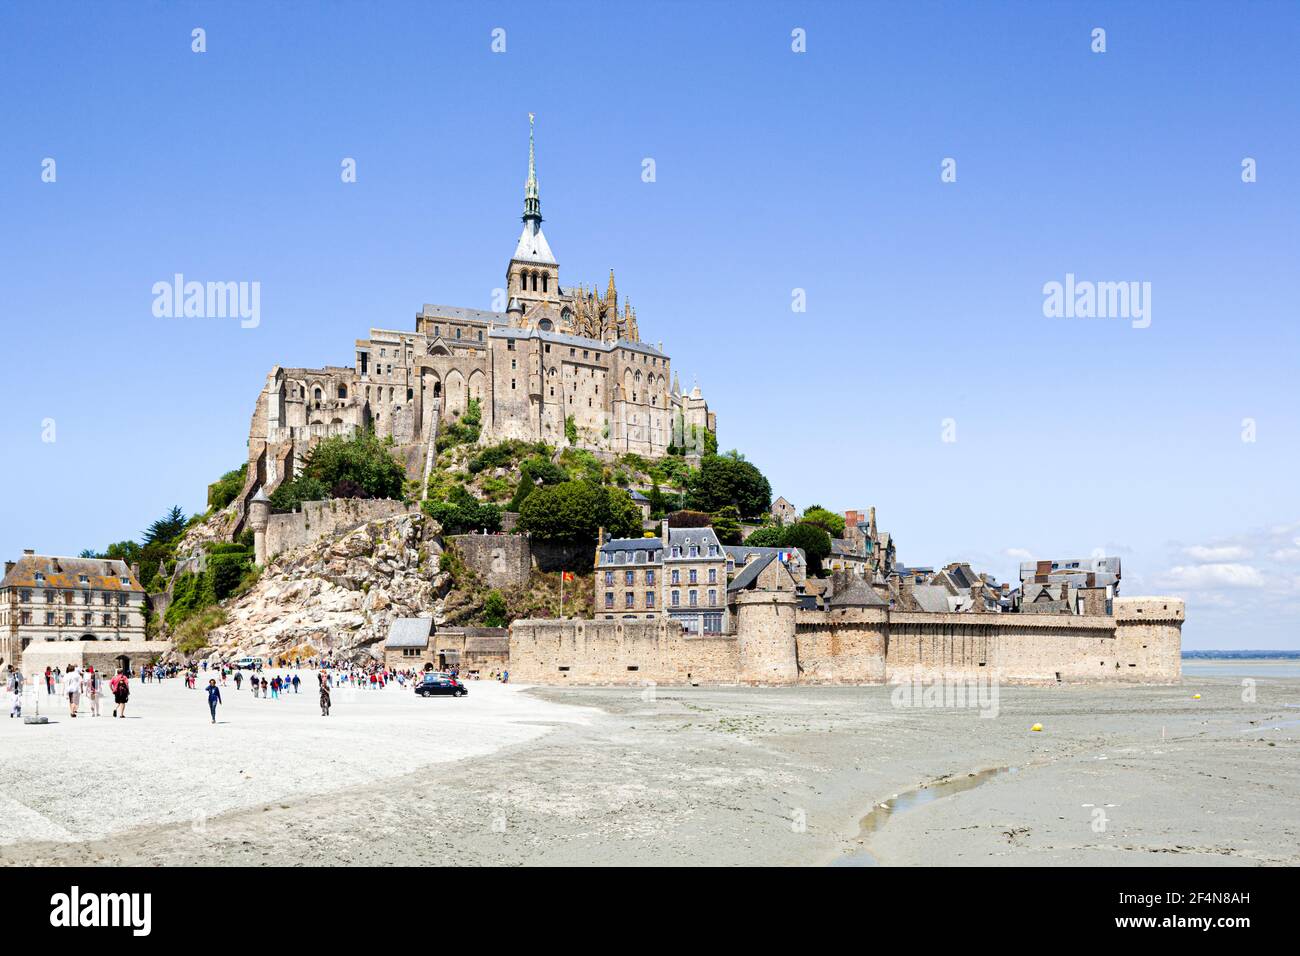 Mont Saint Michel, Normandy, France Stock Photo